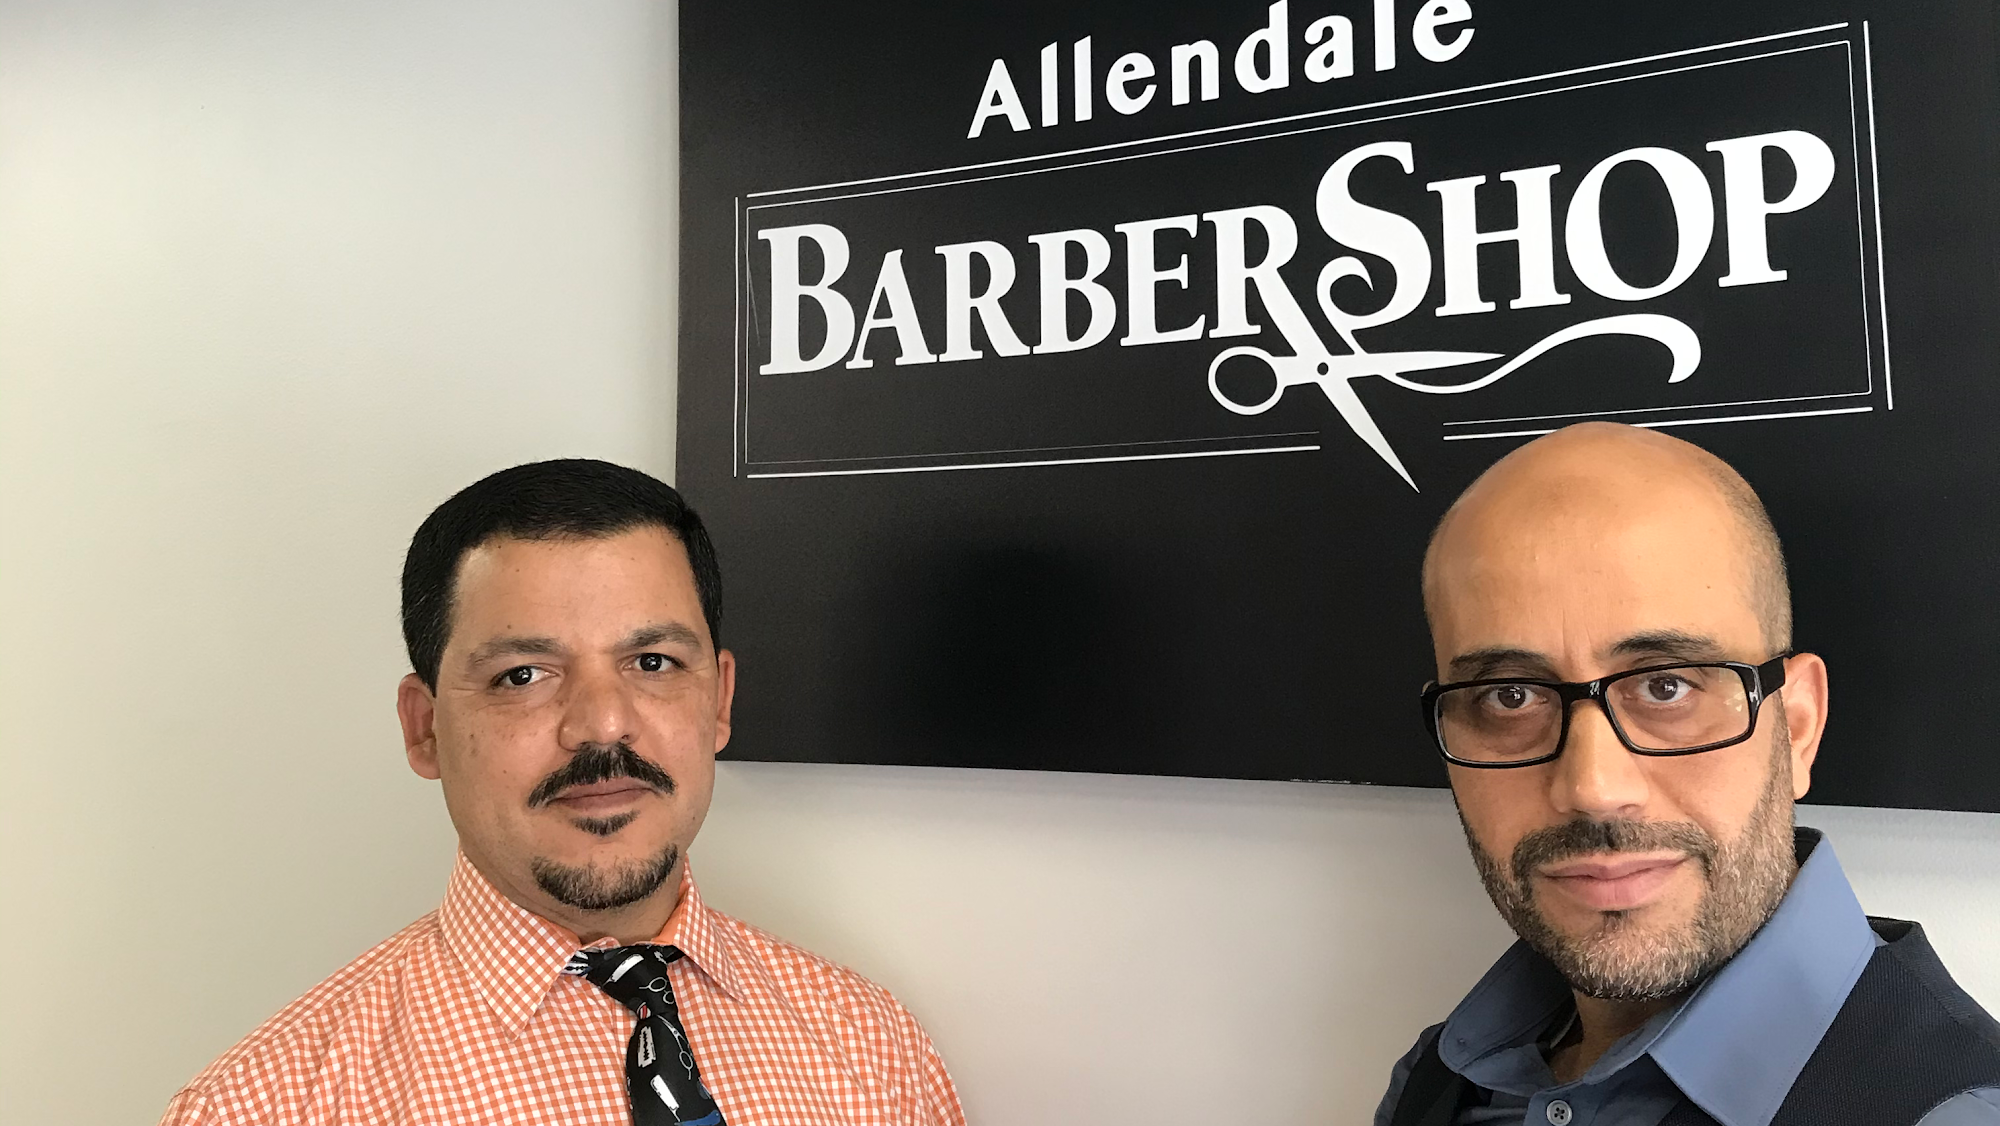 Allendale Barber Shop